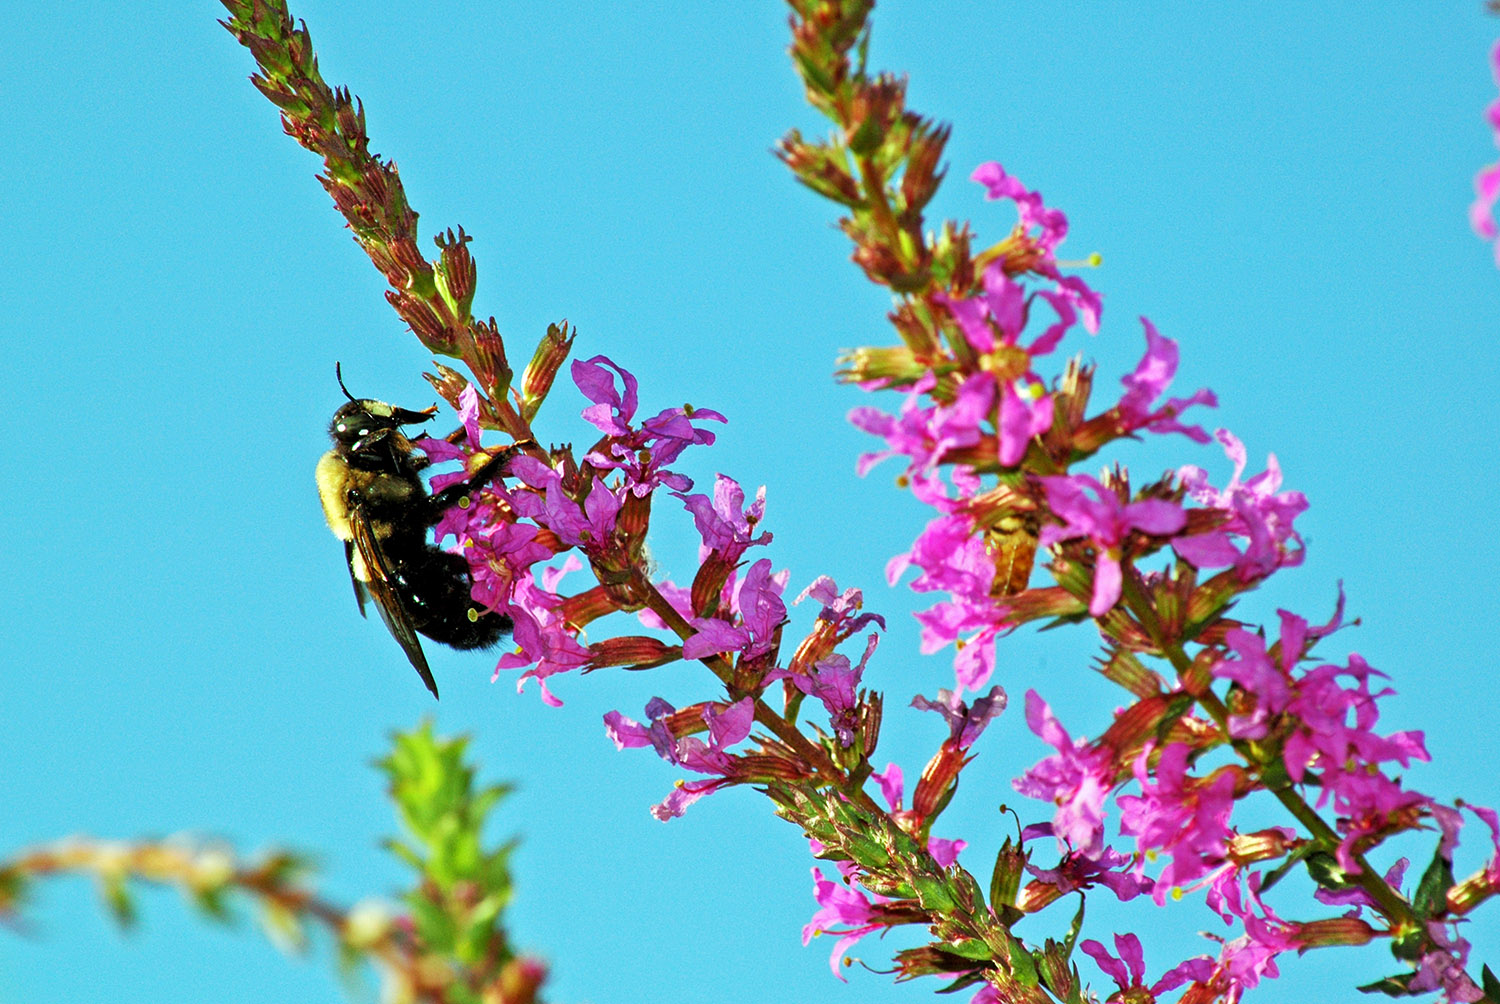 Bumblebee_Closeup_Pink_Flower_Blue_Sky.jpg